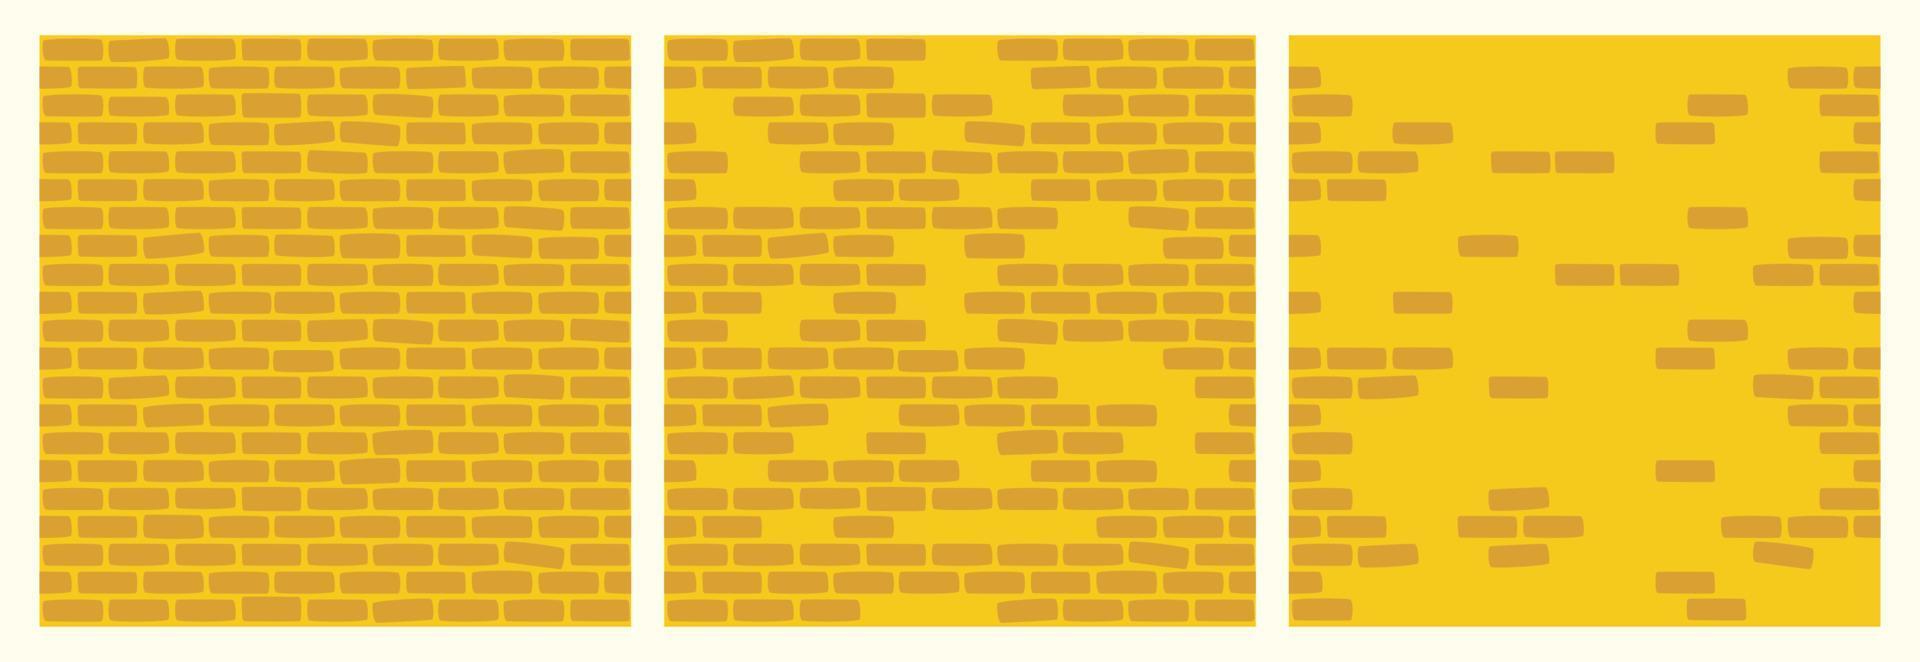 conjunto de patrones de pared de ladrillo de color amarillo. bloques de construcción de edificios colección de fondo transparente para juegos, diseño web, textiles, estampados y cafés. vector